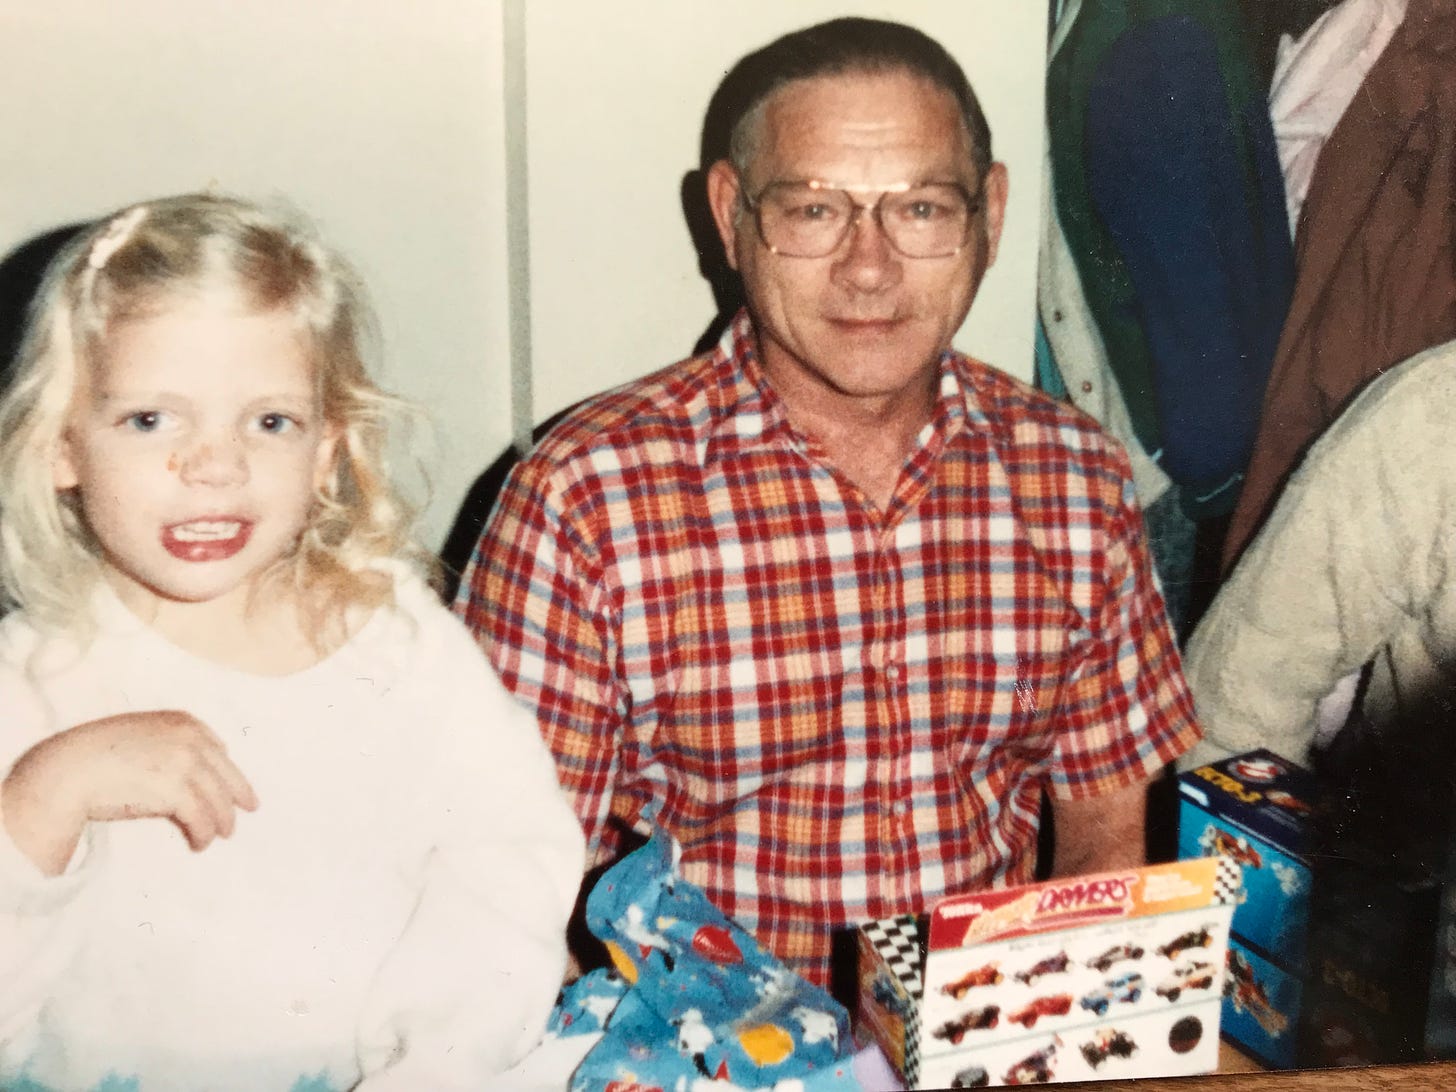 Amanda at young age with grandpa Harley